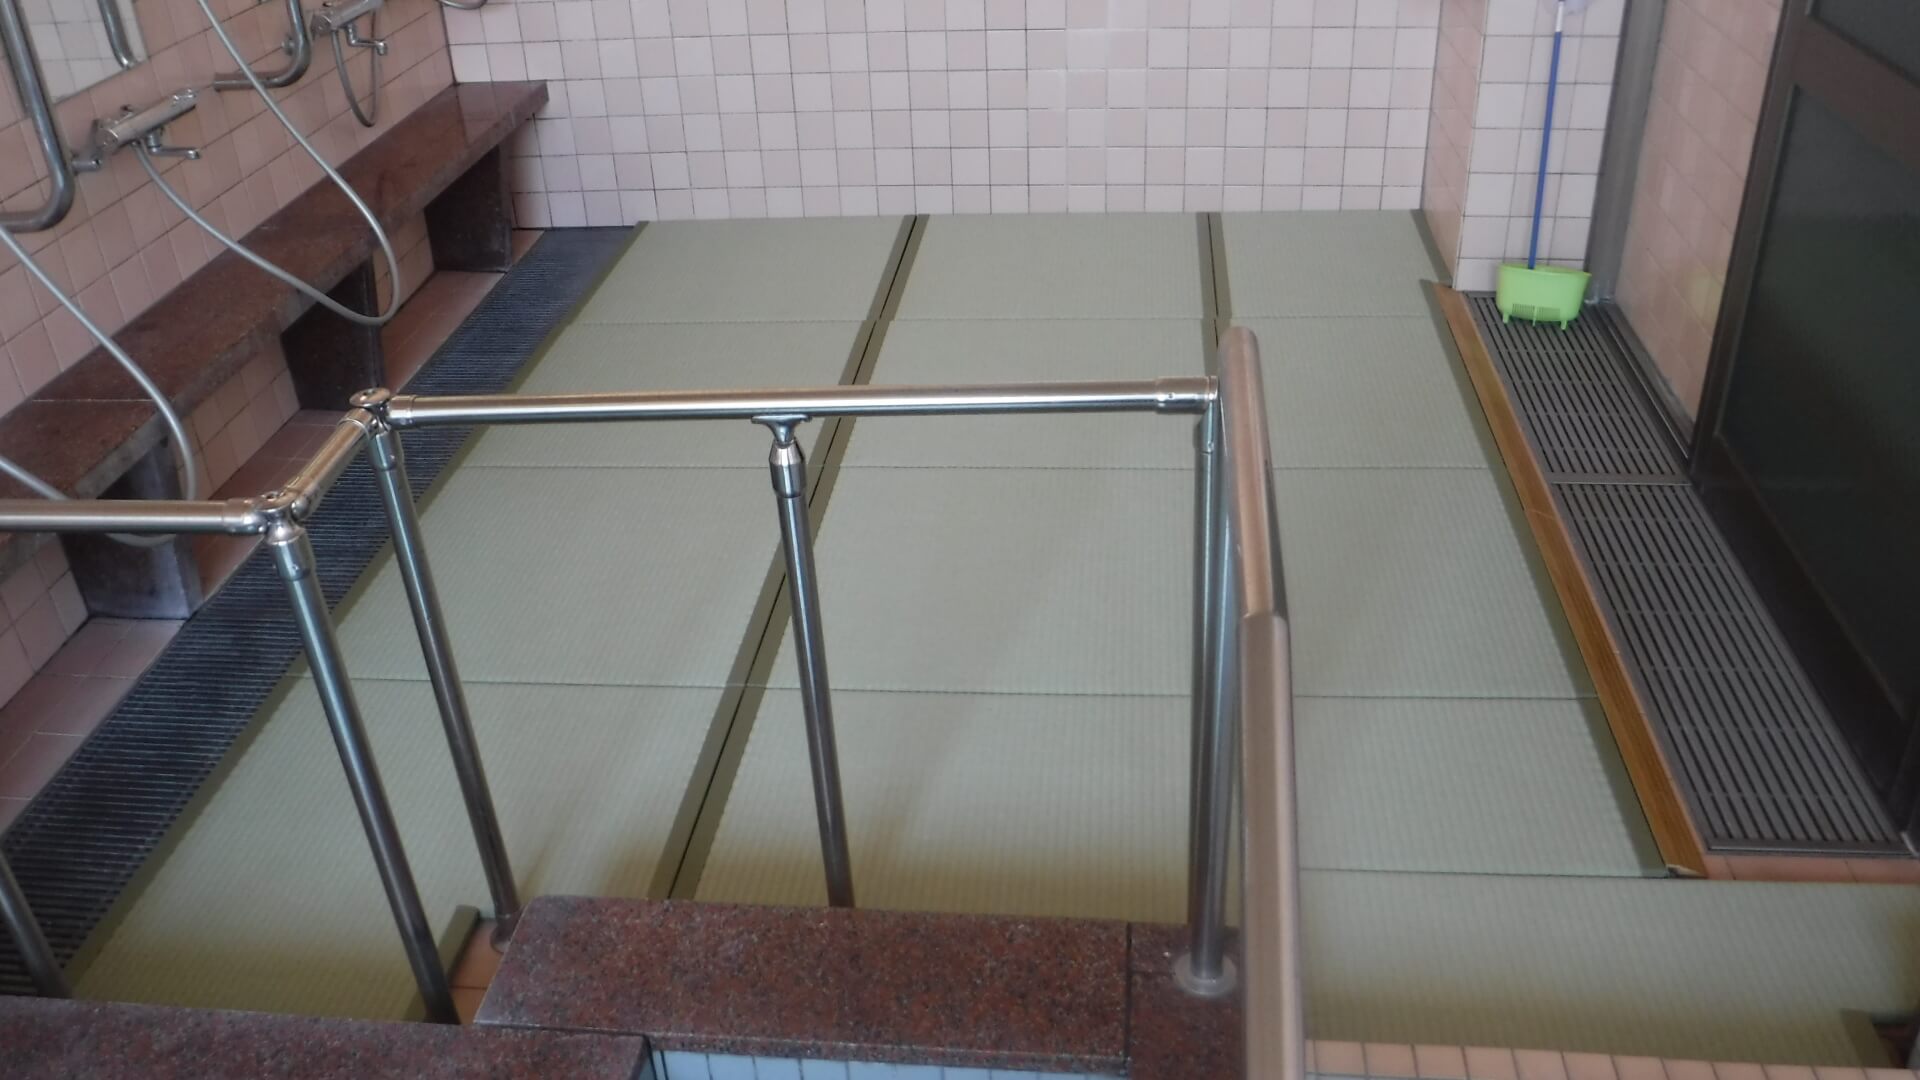 小川電機 開発営業部 浴室タイル修復工事